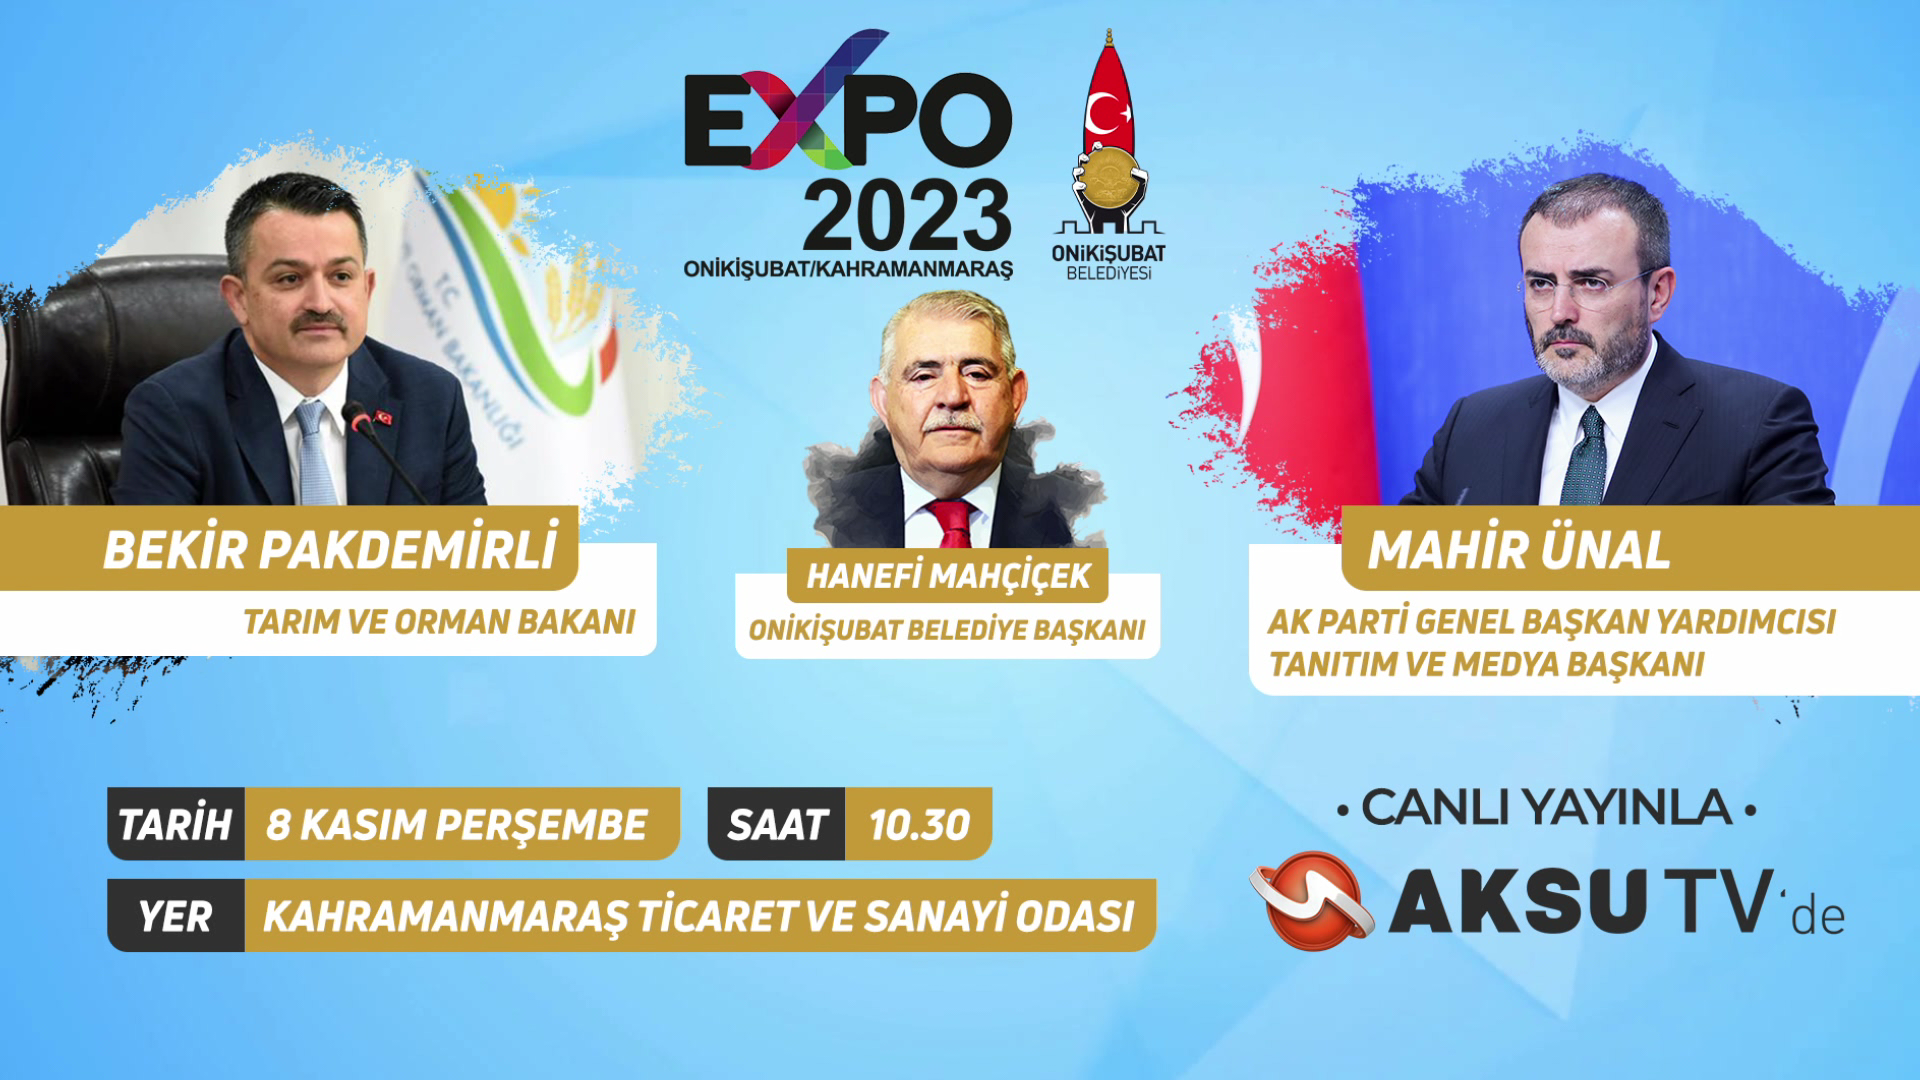 “Expo 2023 Onikişubat / Kahramanmaraş”  Basın Toplantısının Tüm Detayları Perşembe, Saat 10.30’da Kahramanmaraş Ticaret Ve Sanayi Odası’ndan  Canlı Yayınla Aksu TV Ekranlarında.